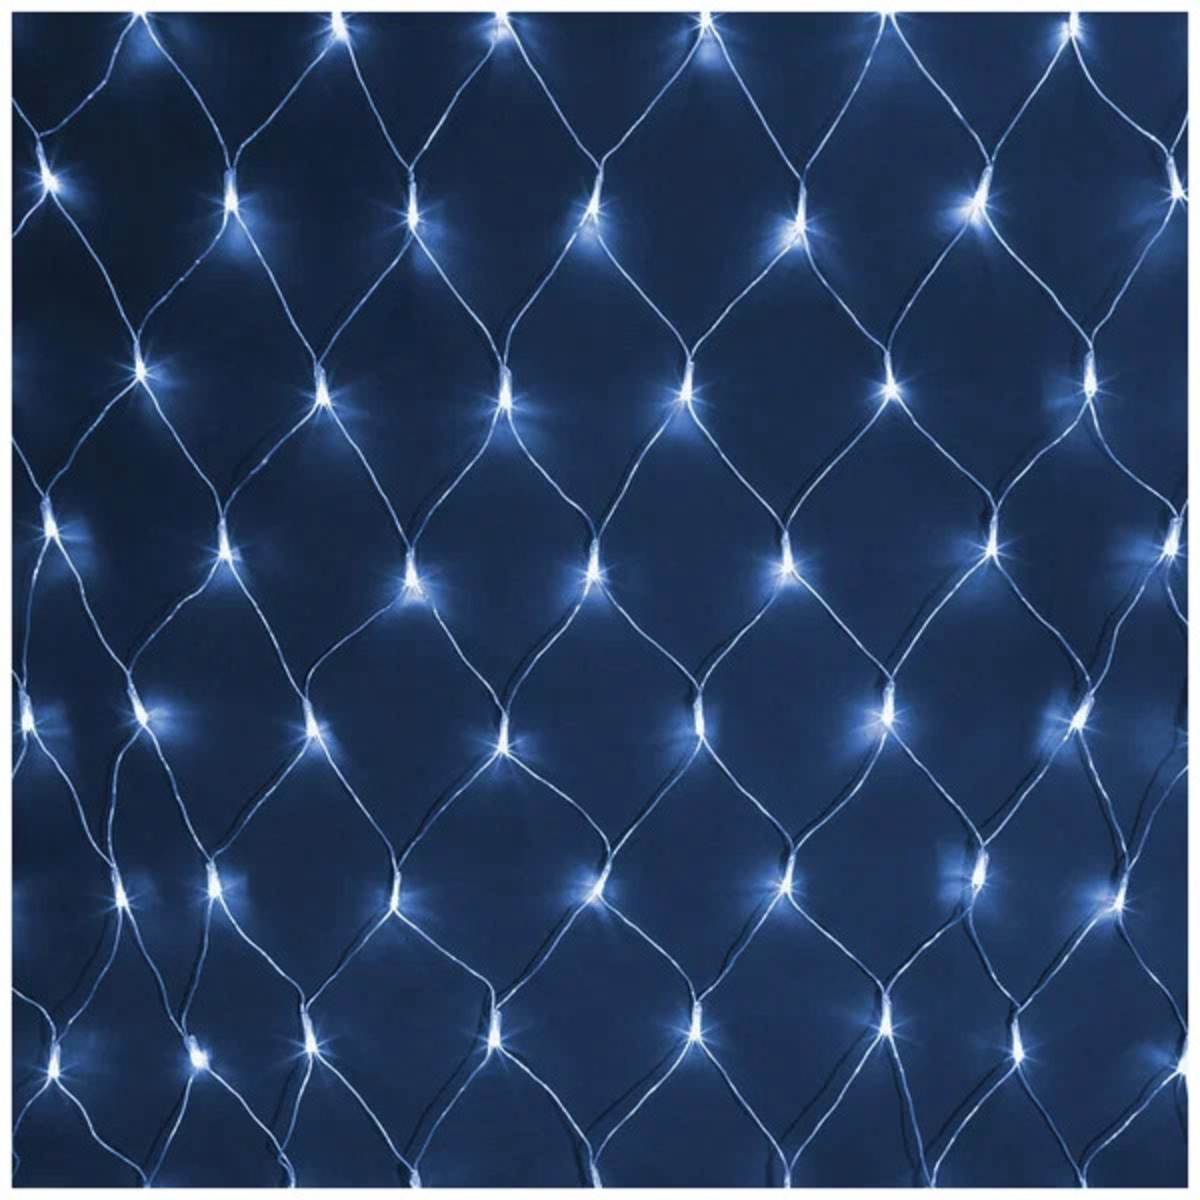 Гирлянда растяжка светодиодная "Сеть" ДхШ 2х2 м., 240 диодов, синий цвет, 8 режимов свечения